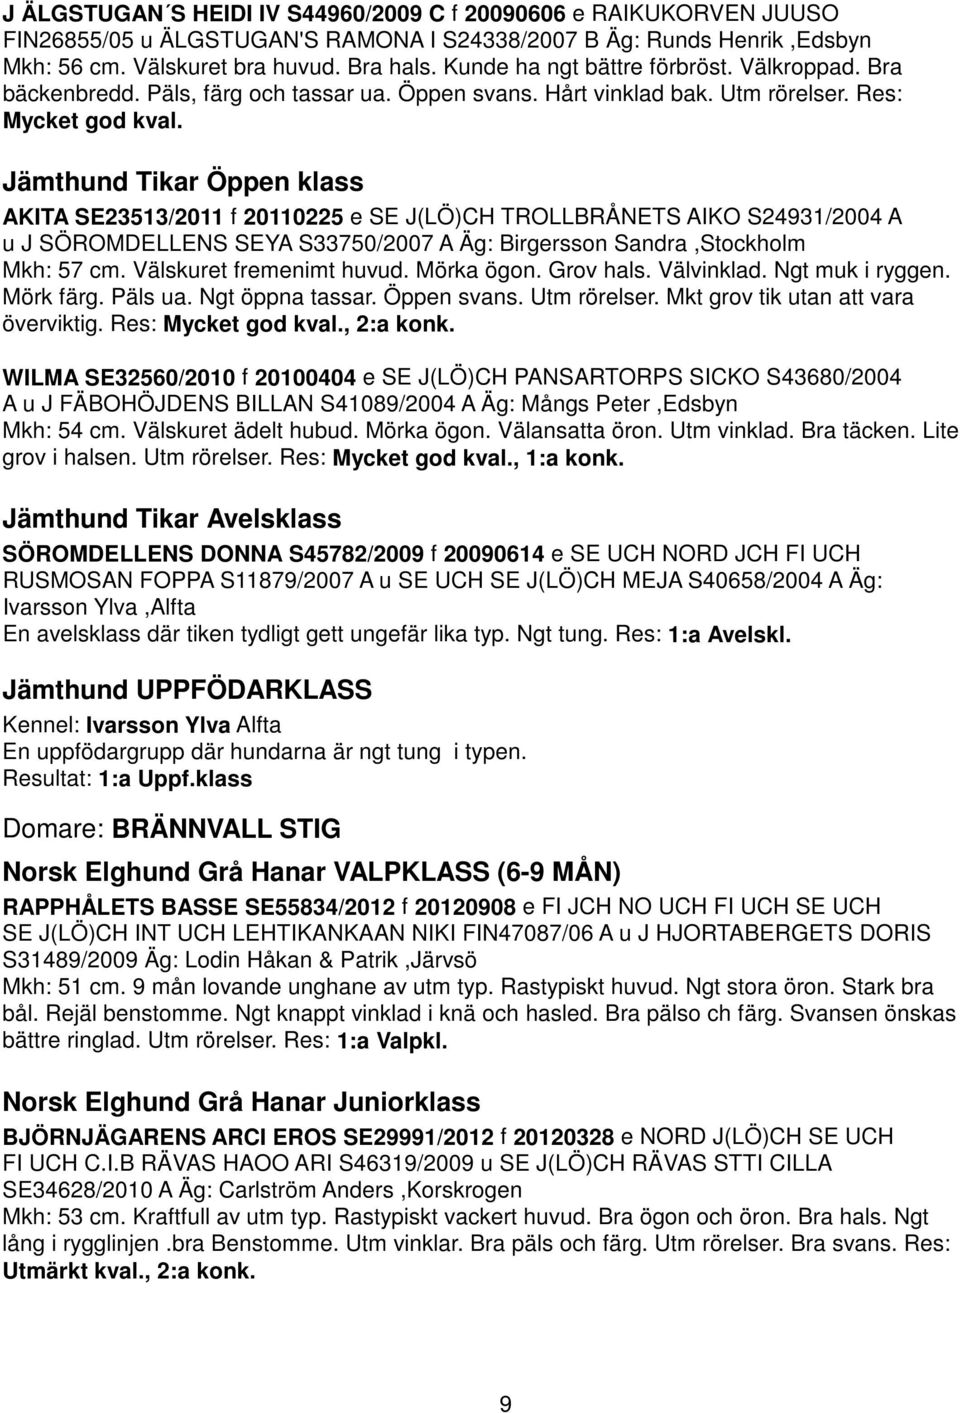 Jämthund Tikar Öppen klass AKITA SE23513/2011 f 20110225 e SE J(LÖ)CH TROLLBRÅNETS AIKO S24931/2004 A u J SÖROMDELLENS SEYA S33750/2007 A Äg: Birgersson Sandra,Stockholm Mkh: 57 cm.